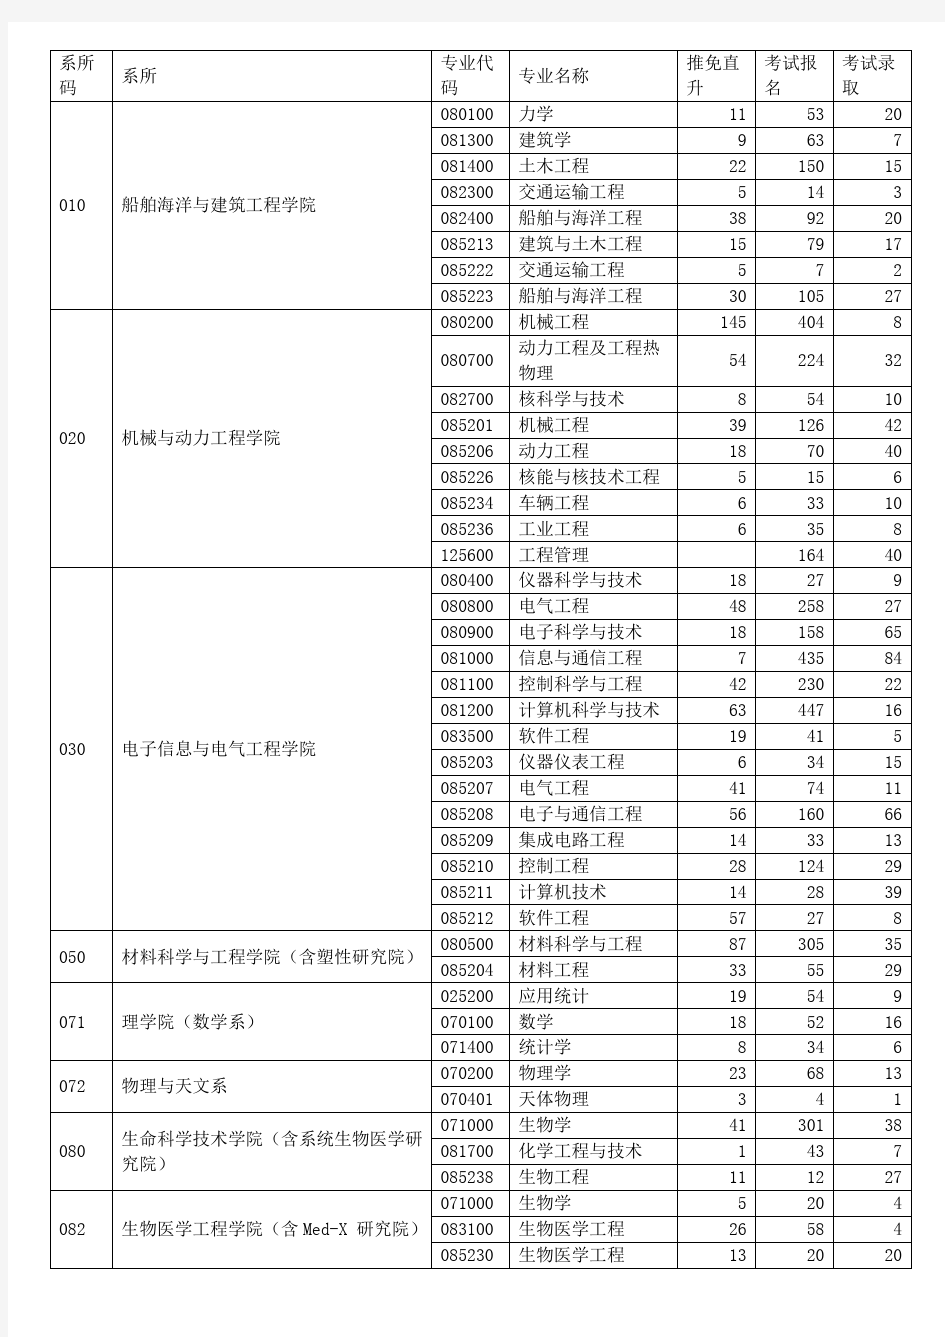 2015年上海交通大学硕士研究生报考录取人数统计